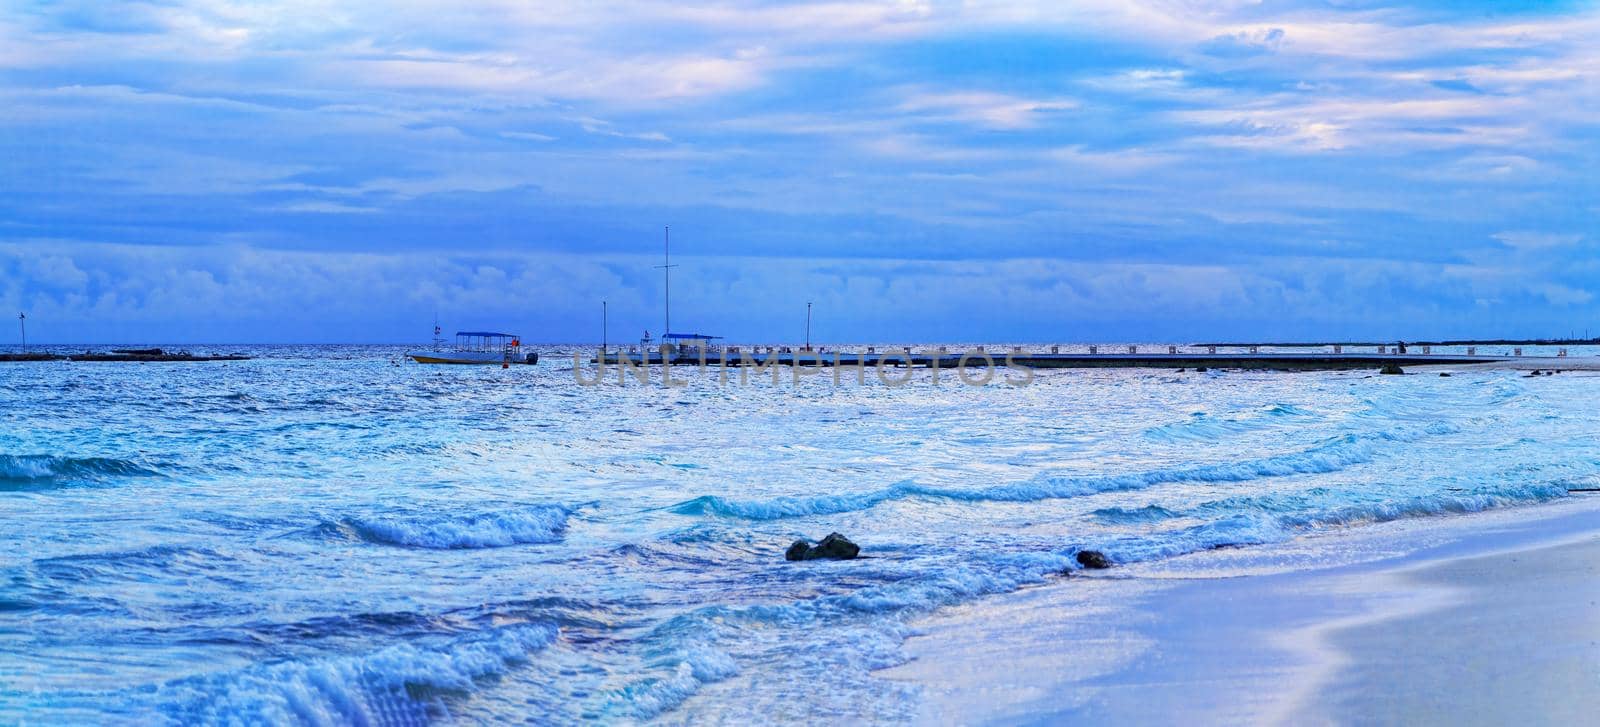 Panorama beautiful sea and the beach. by kolesnikov_studio